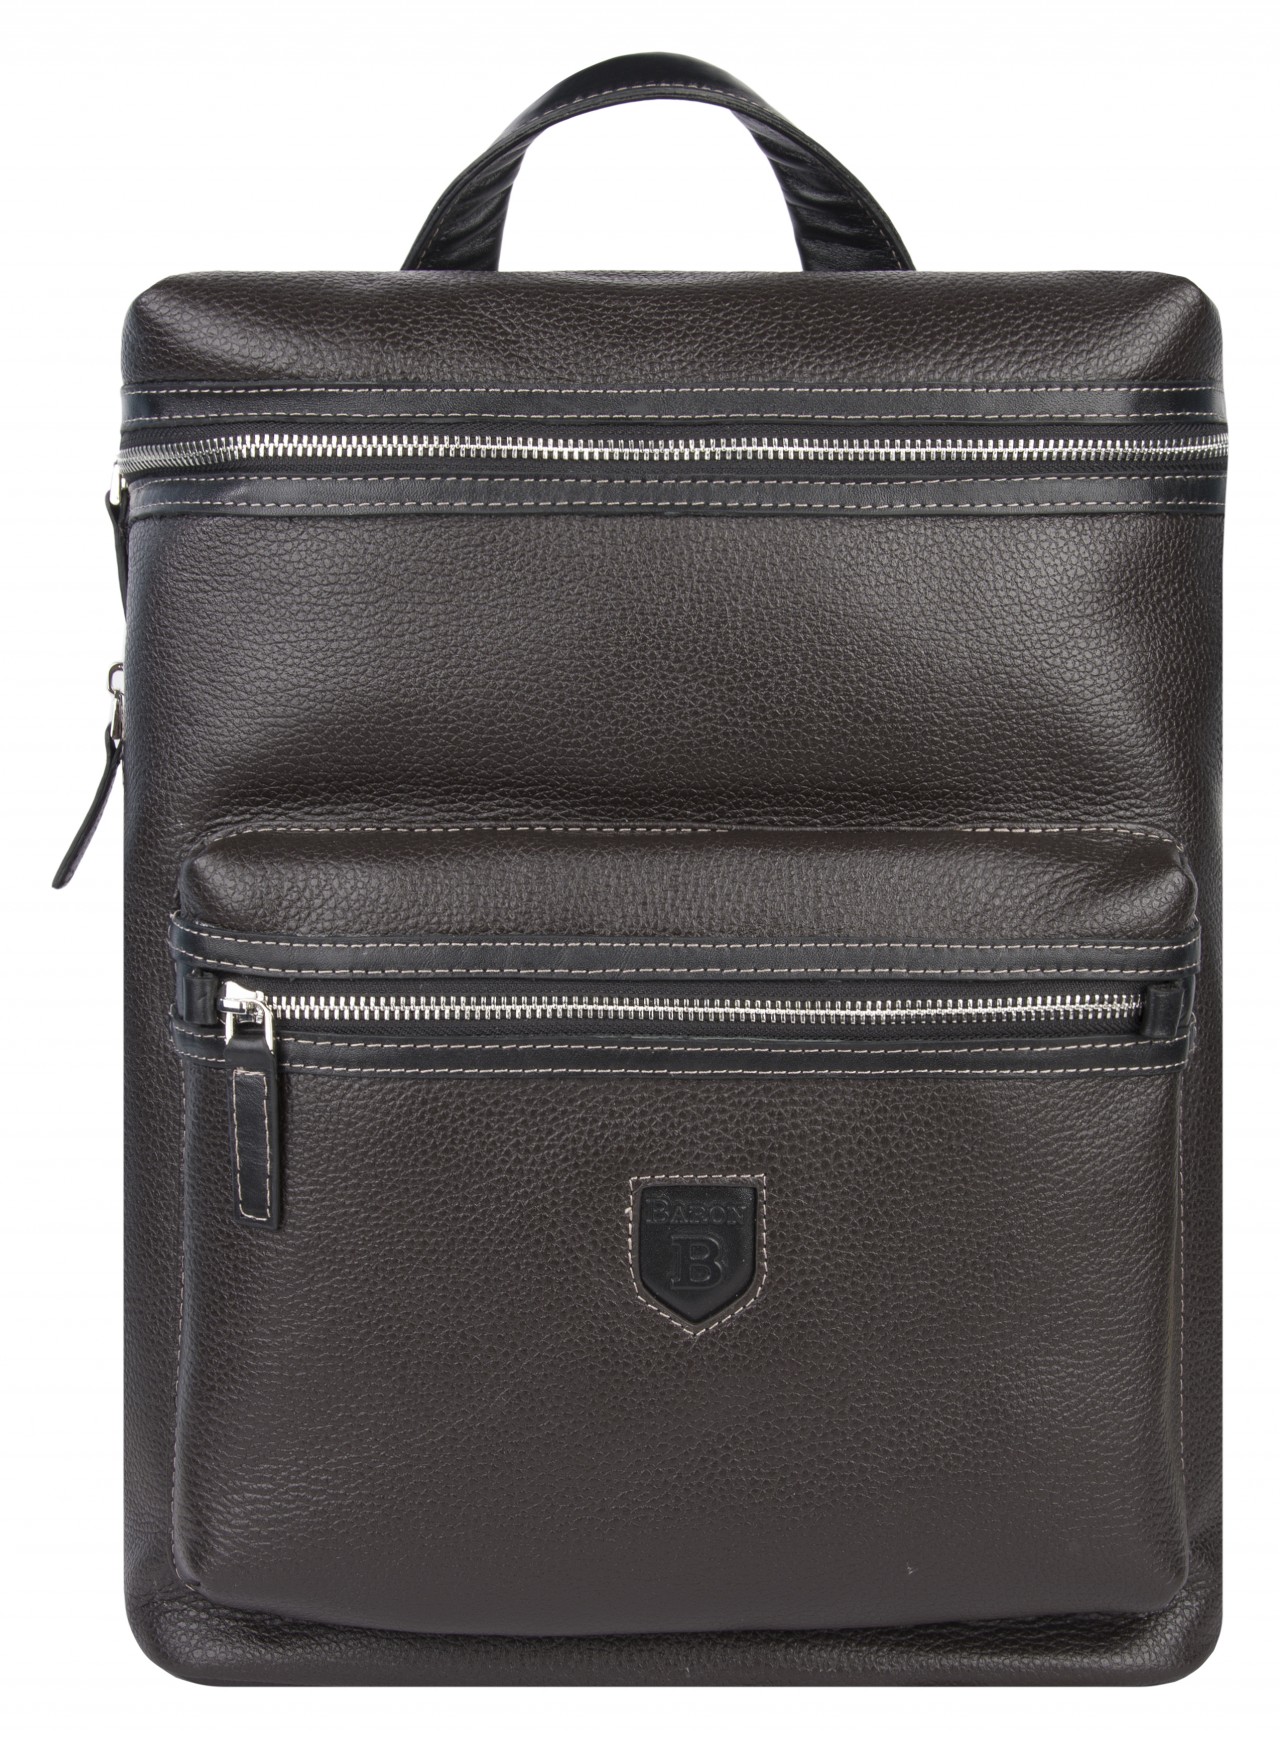 Рюкзак мужской Baron 2-962кВ коричневый/черная отделка, 38x29.5x12 см